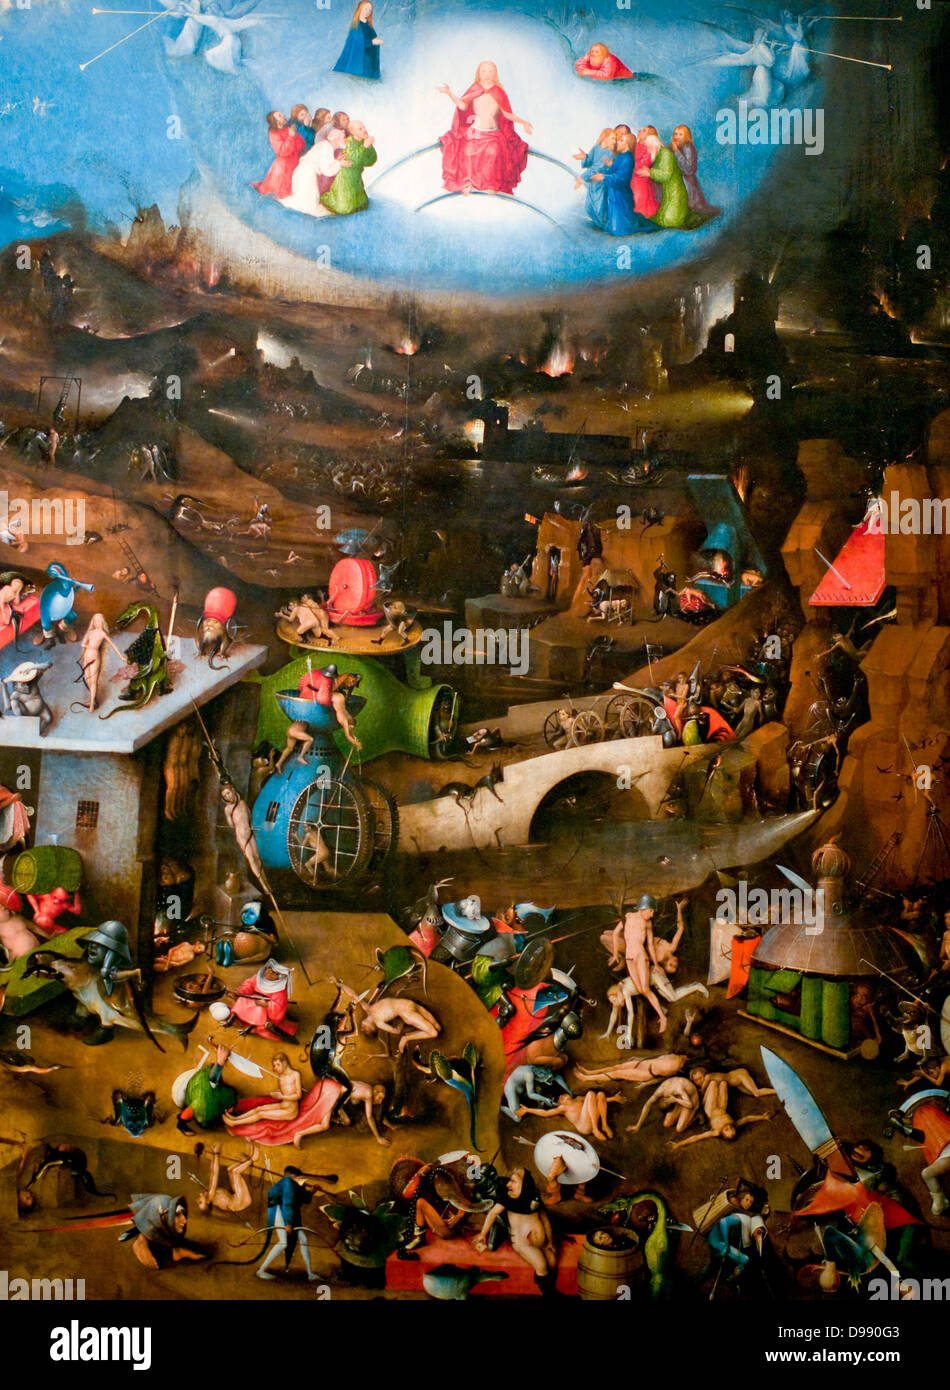 Purgatory by Hieronymus Bosch Stock Photo - Alamy